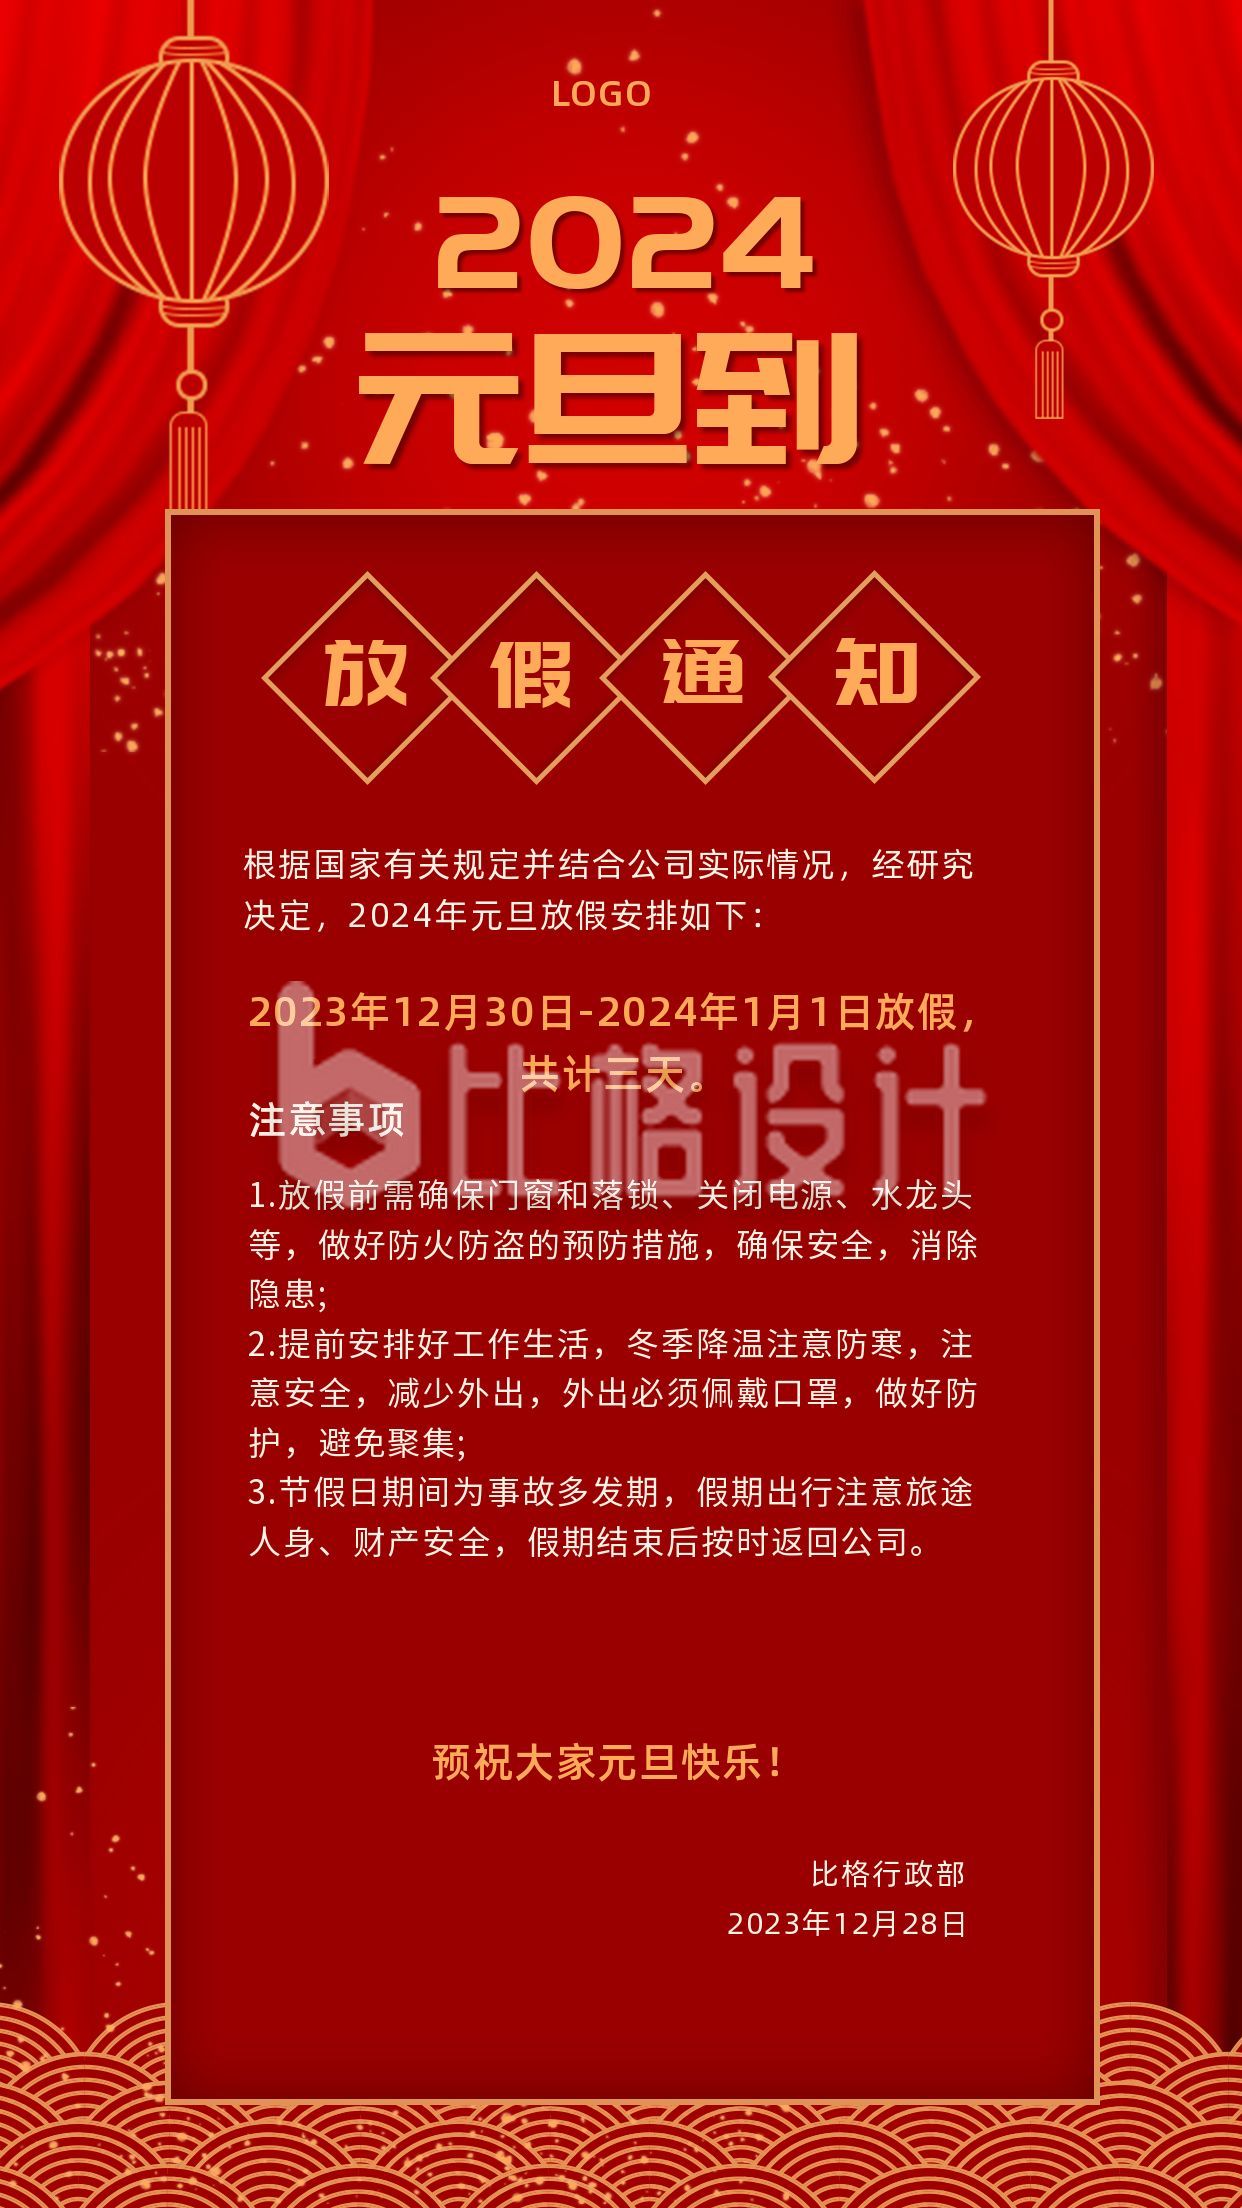 企业元旦新年春节放假通知手机海报